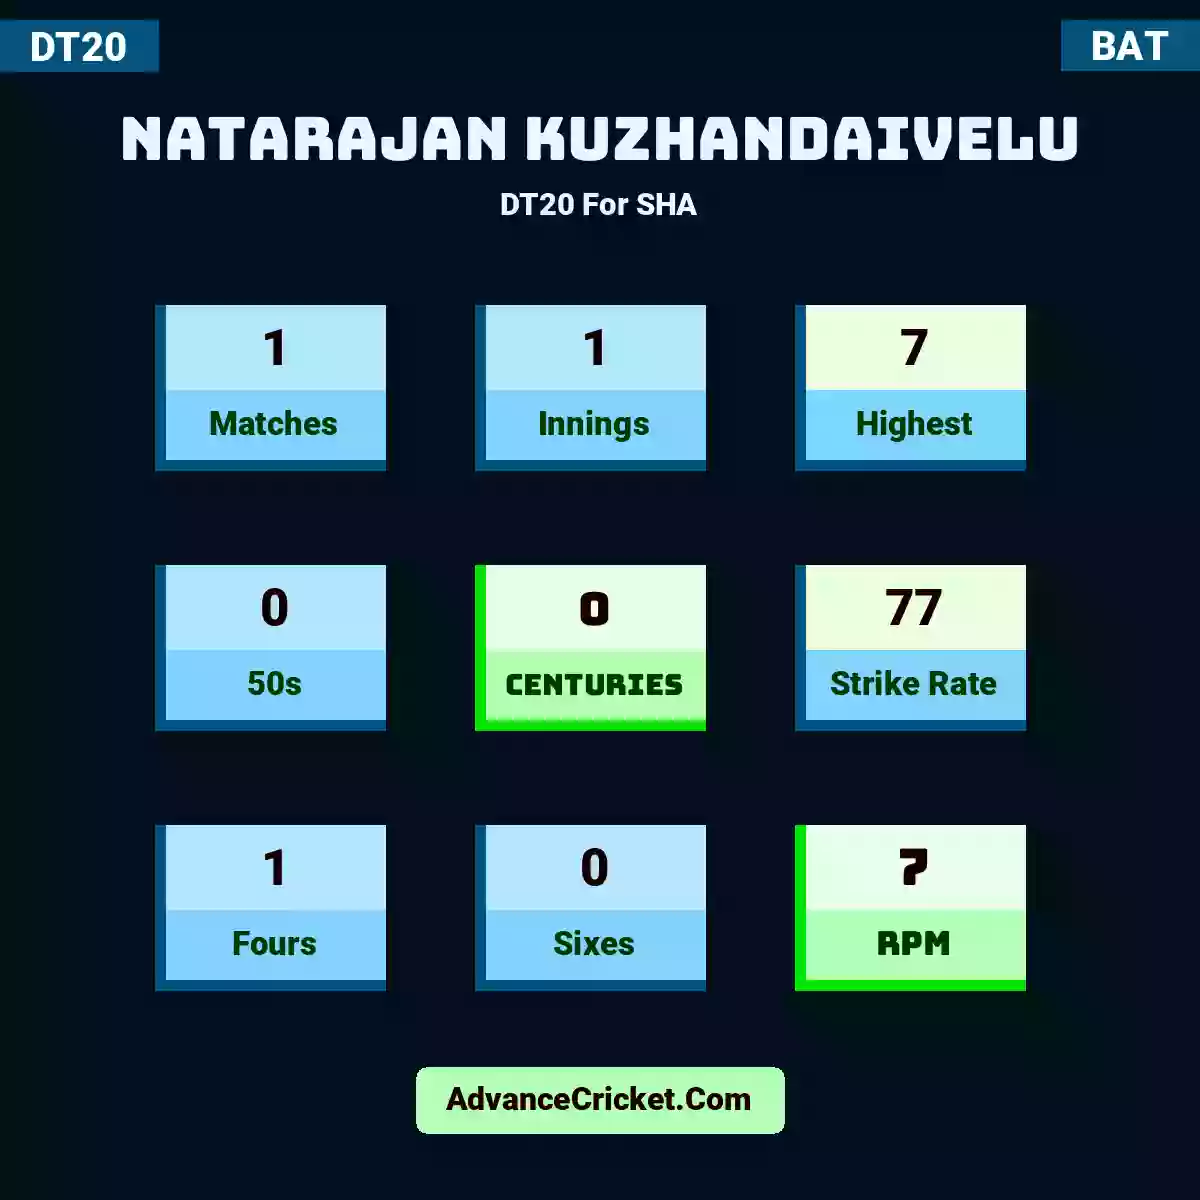 Natarajan Kuzhandaivelu DT20  For SHA, Natarajan Kuzhandaivelu played 1 matches, scored 7 runs as highest, 0 half-centuries, and 0 centuries, with a strike rate of 77. N.Kuzhandaivelu hit 1 fours and 0 sixes, with an RPM of 7.